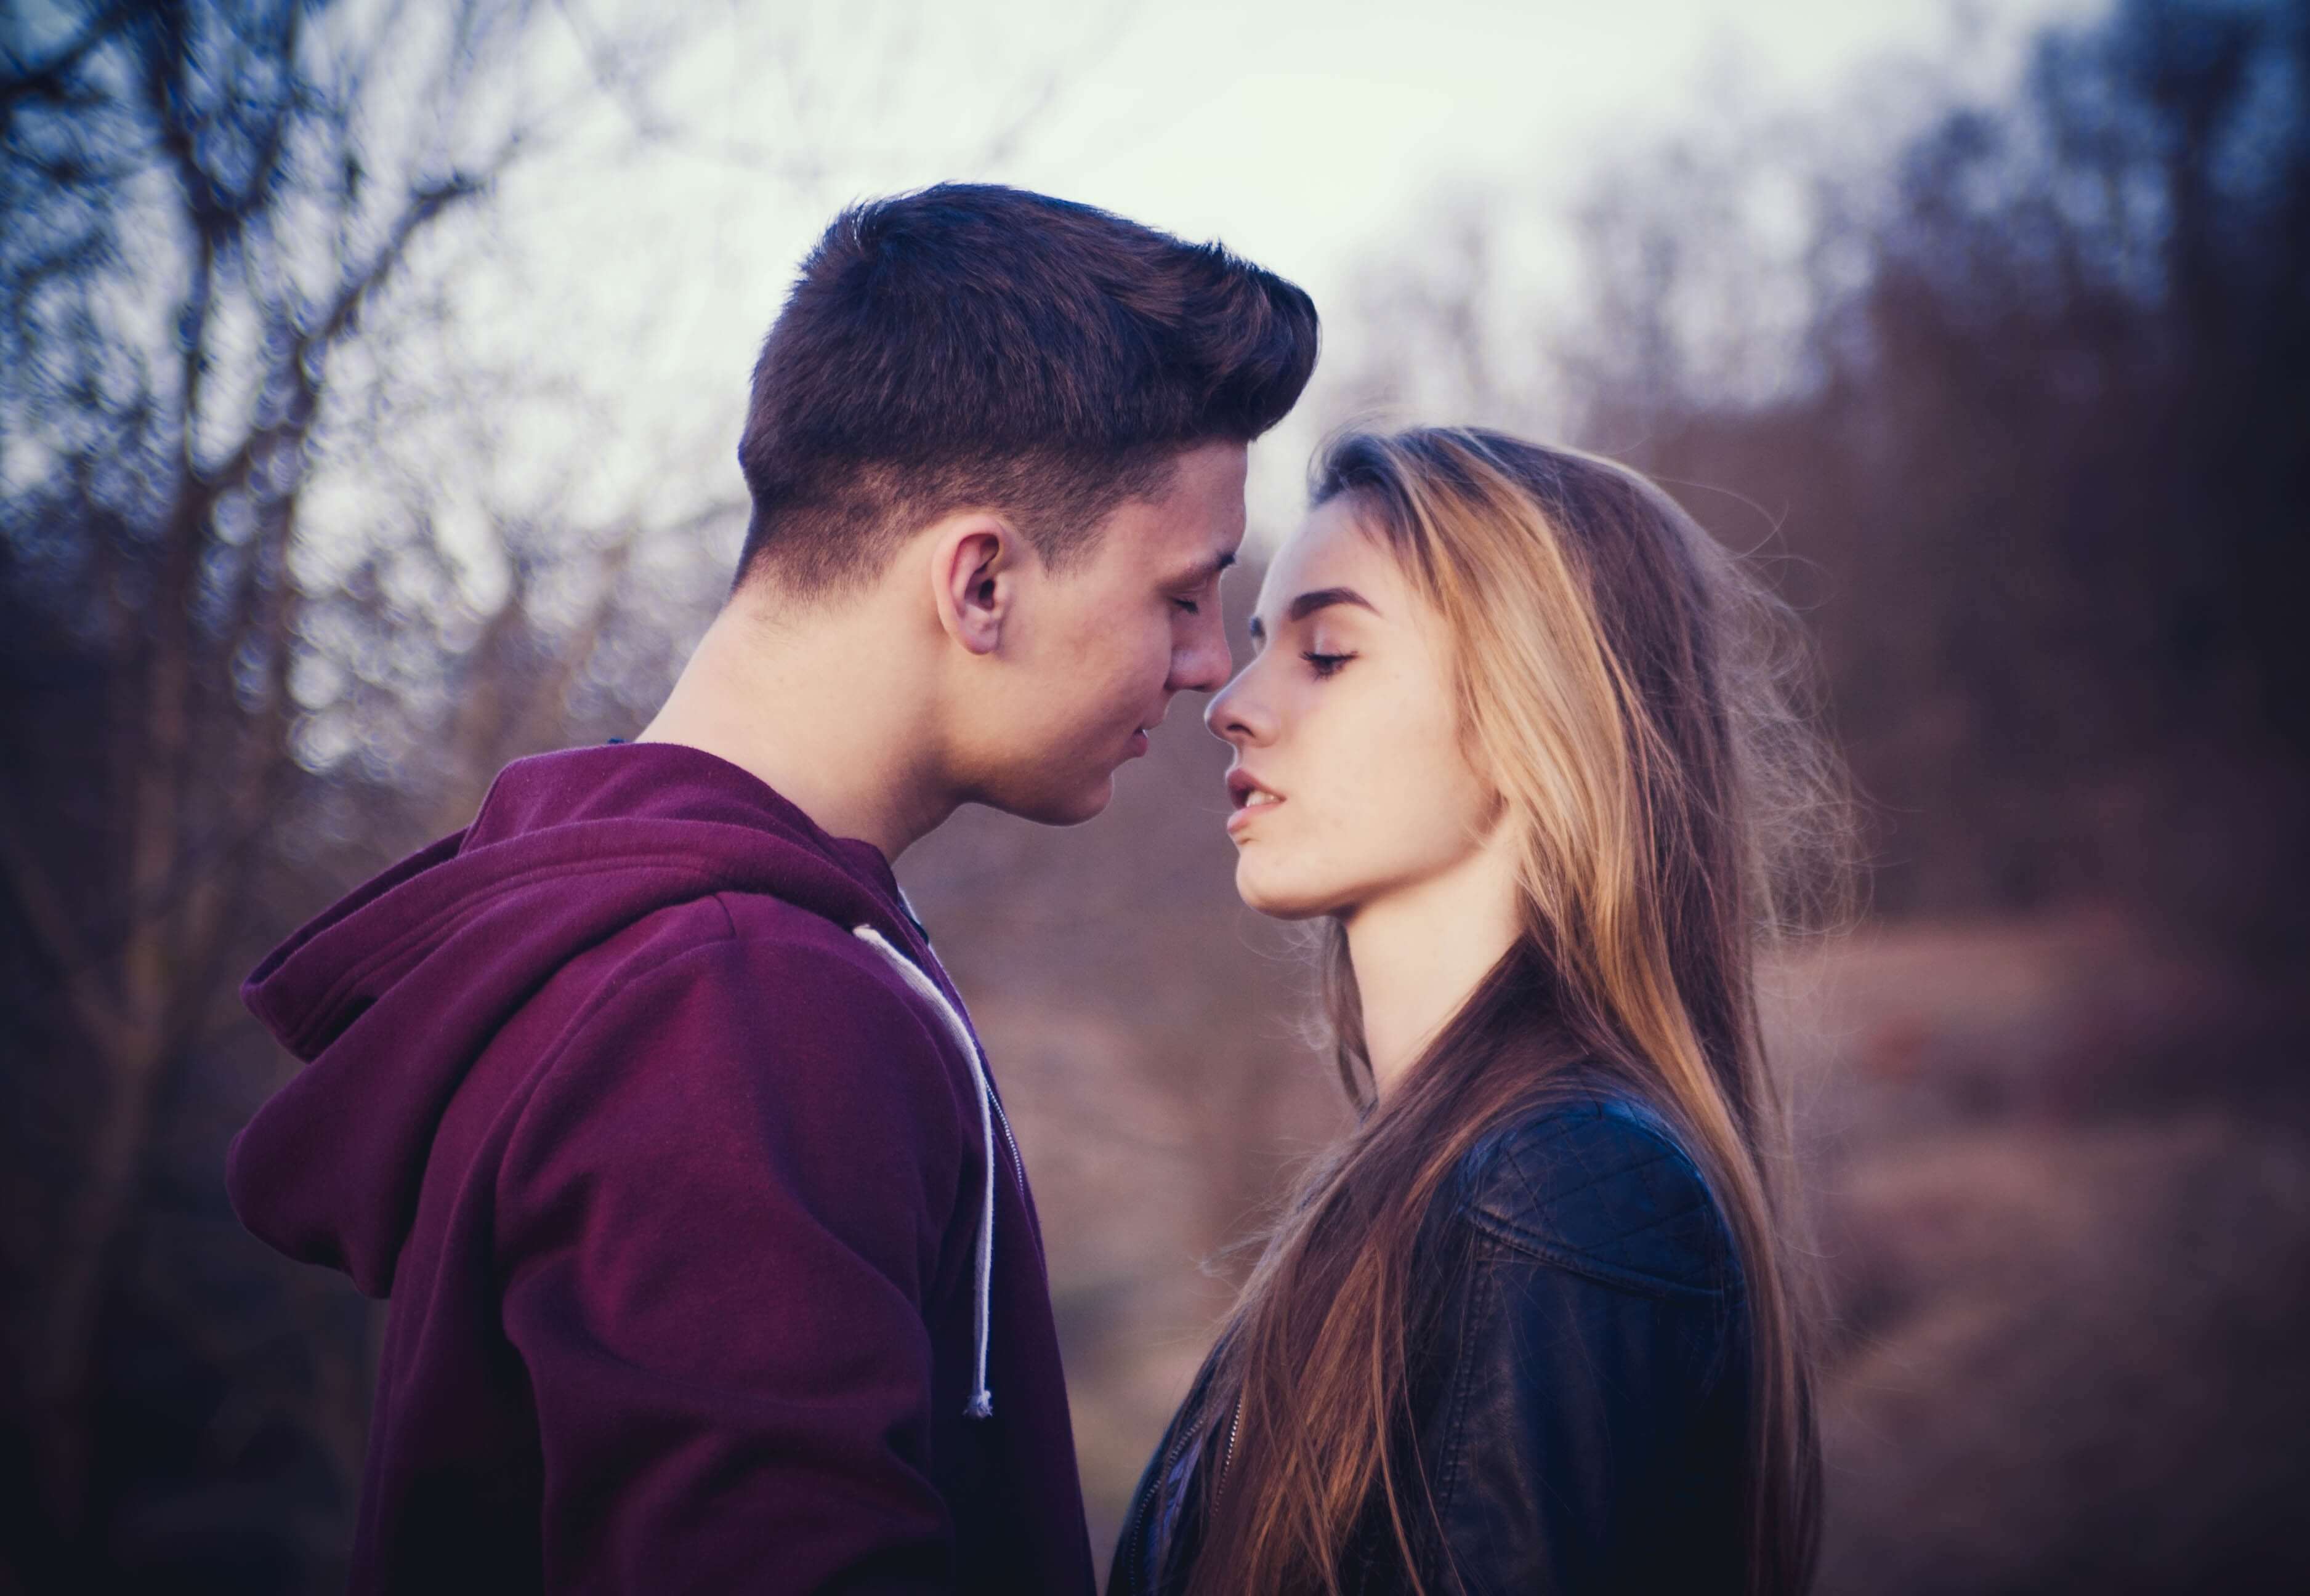 Красивые фото на которых парень и девушка целуются - сборка 9